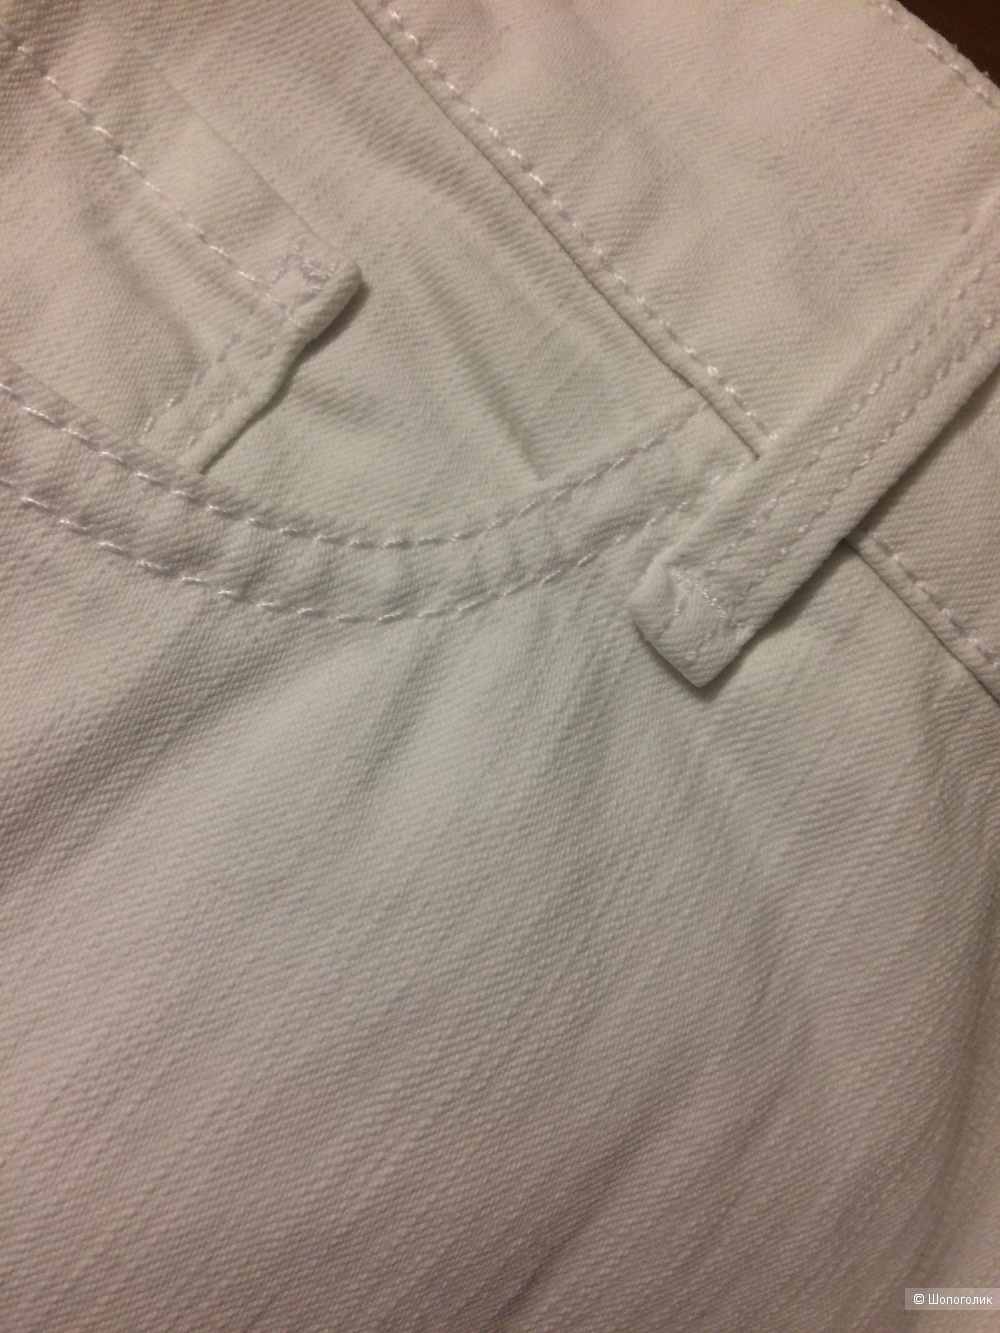 Белые джинсы GARDEUR, размер 48